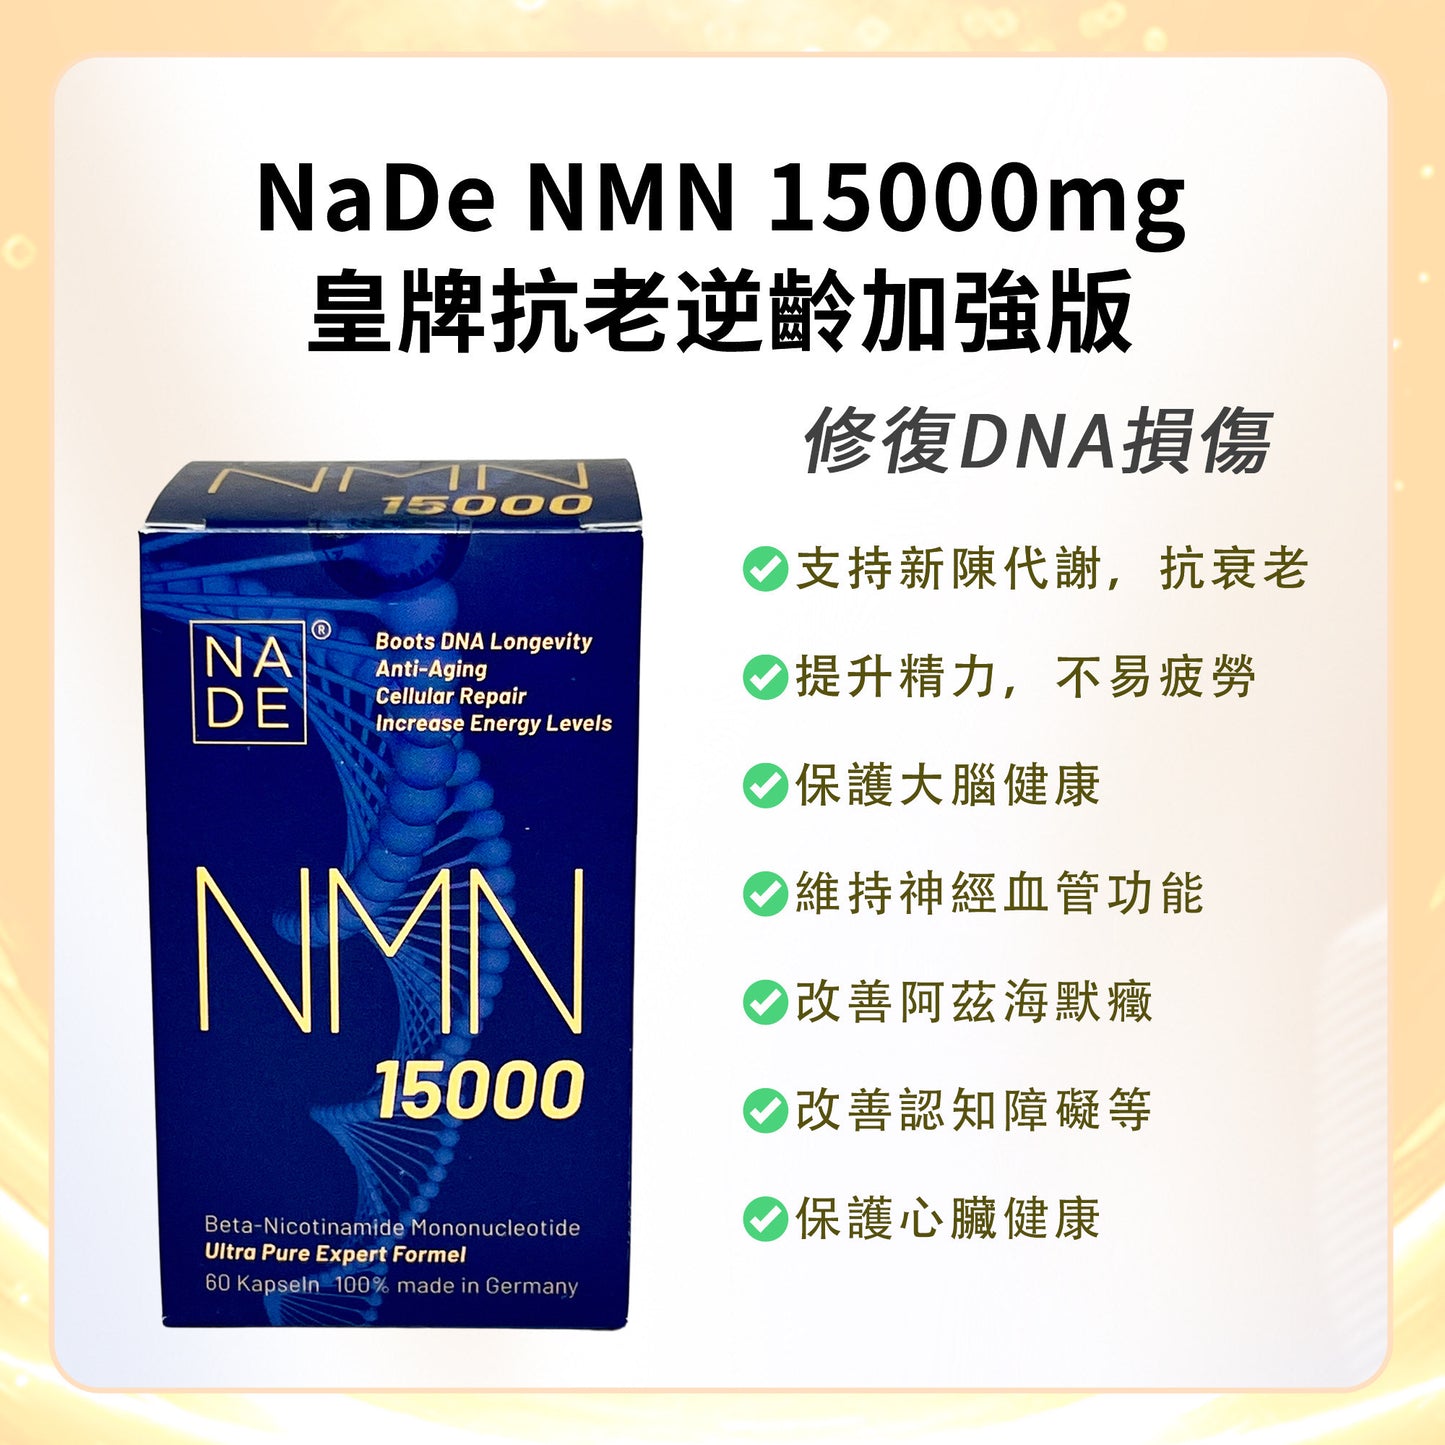 NaDe NMN 15000mg皇牌抗老逆齡加强版